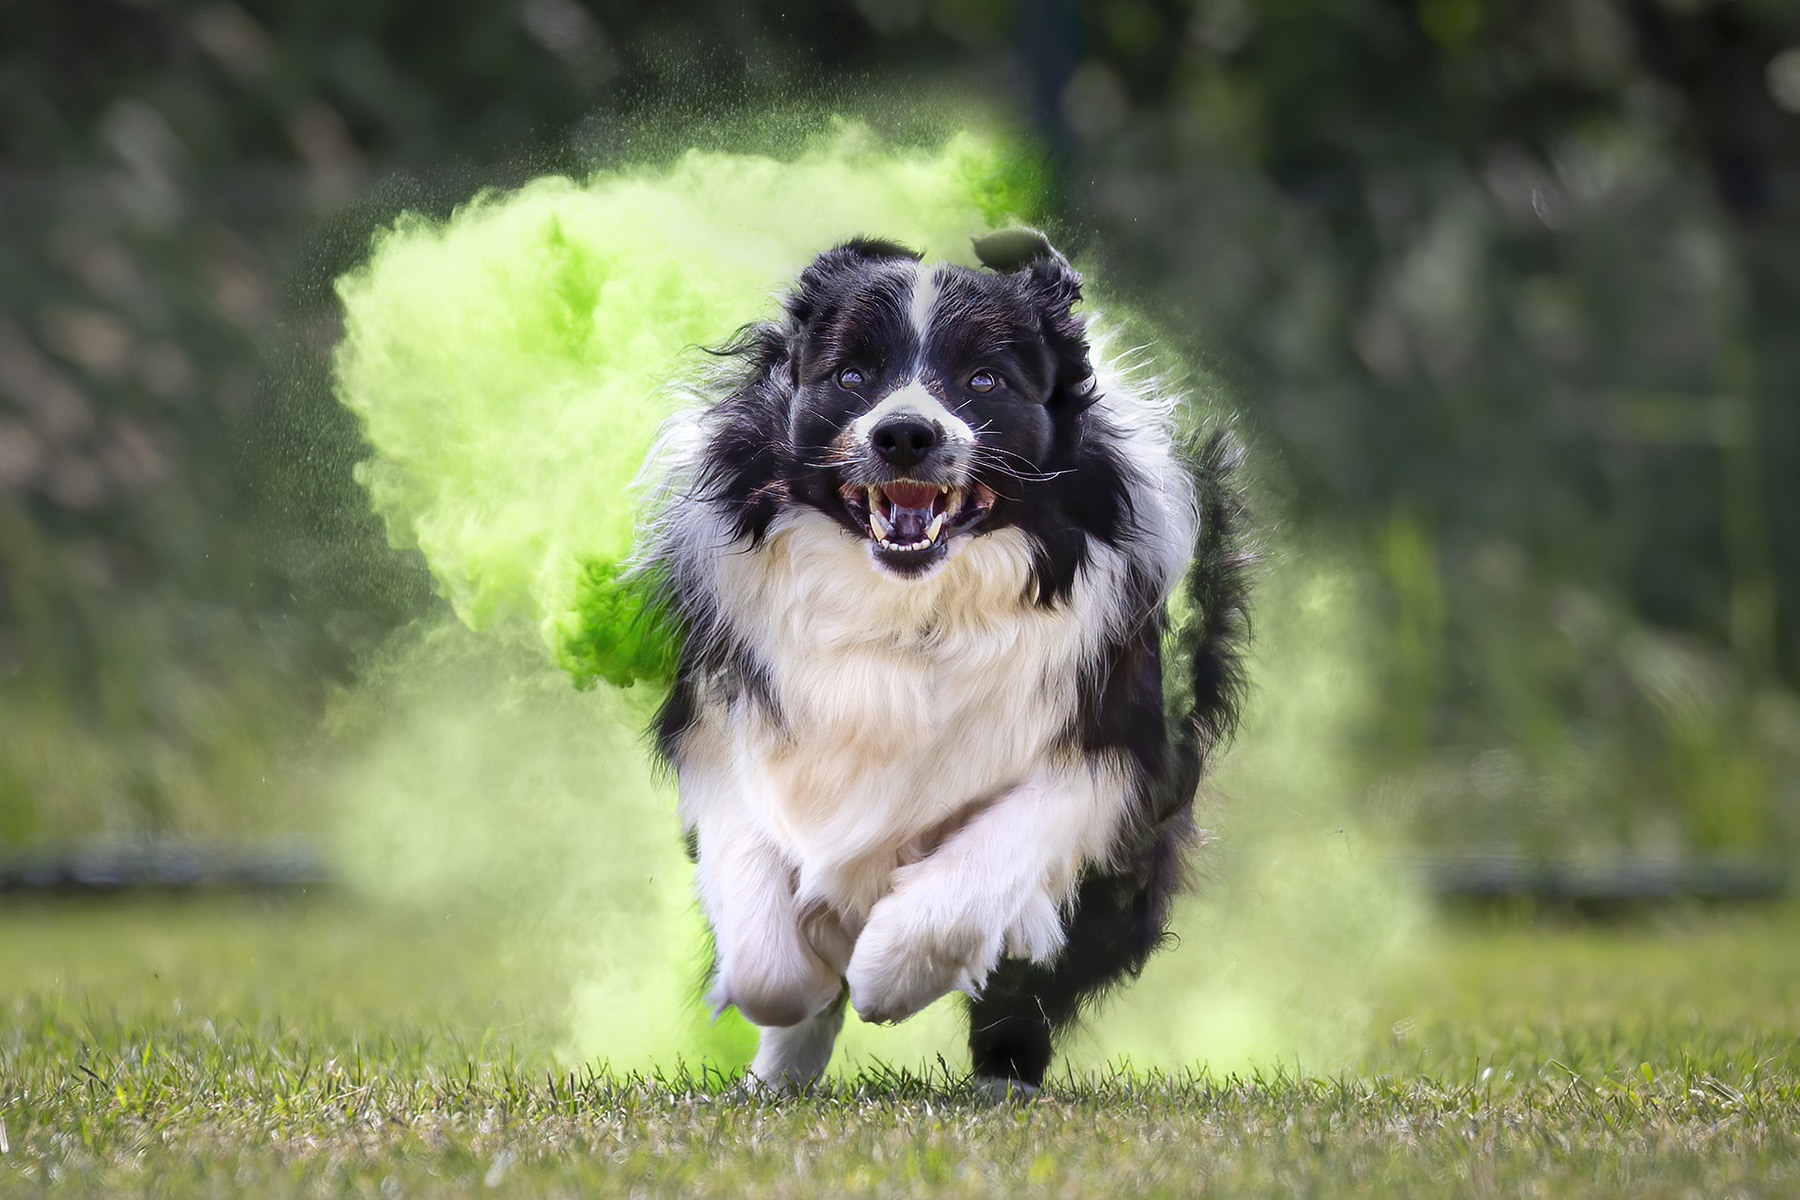 Portret van een rennende hond met gekleurd groen poeder. Creatieve hondenfotografie vanuit Limburg door Huub Keulers en Lorette Janssen, Elsloo.